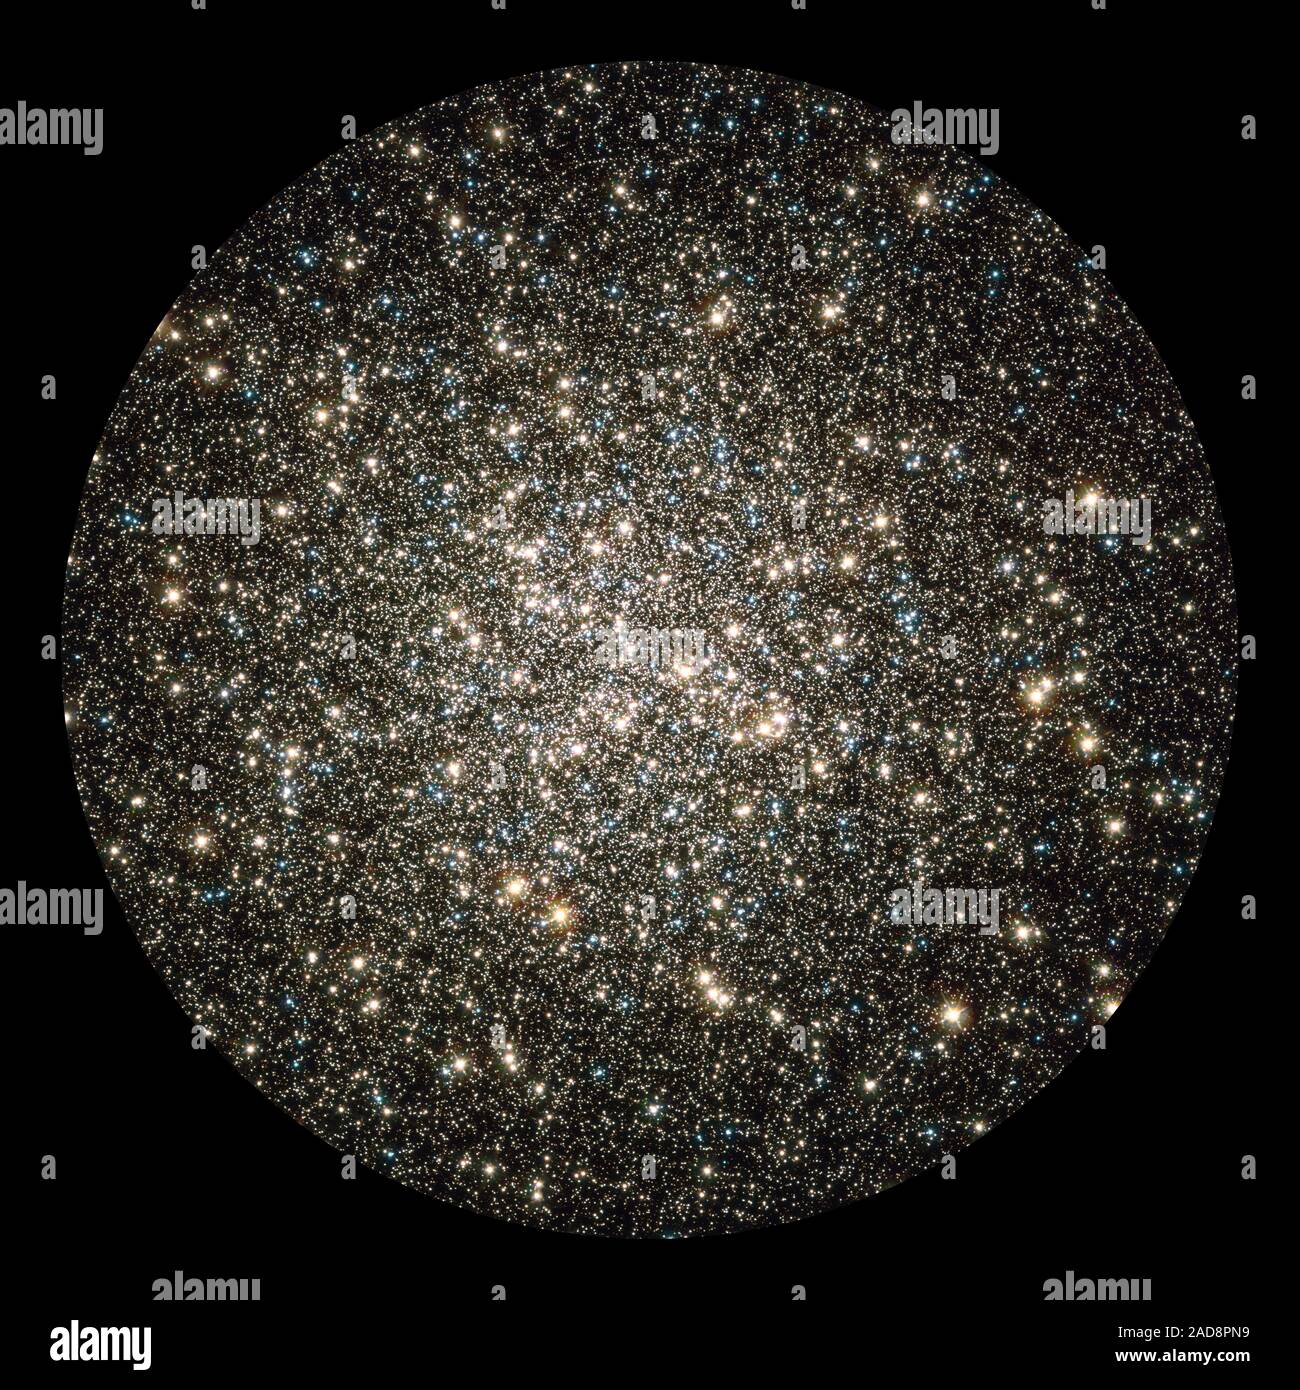 Como un torbellino de escamas brillantes chispeantes en un globo de nieve, Hubble atrapa un vistazo instantáneo de muchos cientos de miles de estrellas en movimiento en el cúmulo globular M13, uno de los mejores y más brillantes conocidos cúmulos globulares en el cielo del norte. Este brillante metrópolis de estrellas se encuentra fácilmente en el cielo de invierno en la constelación de Hércules e incluso puede vislumbrarse con el ojo desnudo bajo un cielo oscuro. M13 es el hogar de más de 100.000 estrellas y ubicado a una distancia de 25.000 años luz. Estas estrellas son empaquetados estrechamente juntos en una bola, aproximadamente 150 años-luz de ancho, que th Foto de stock